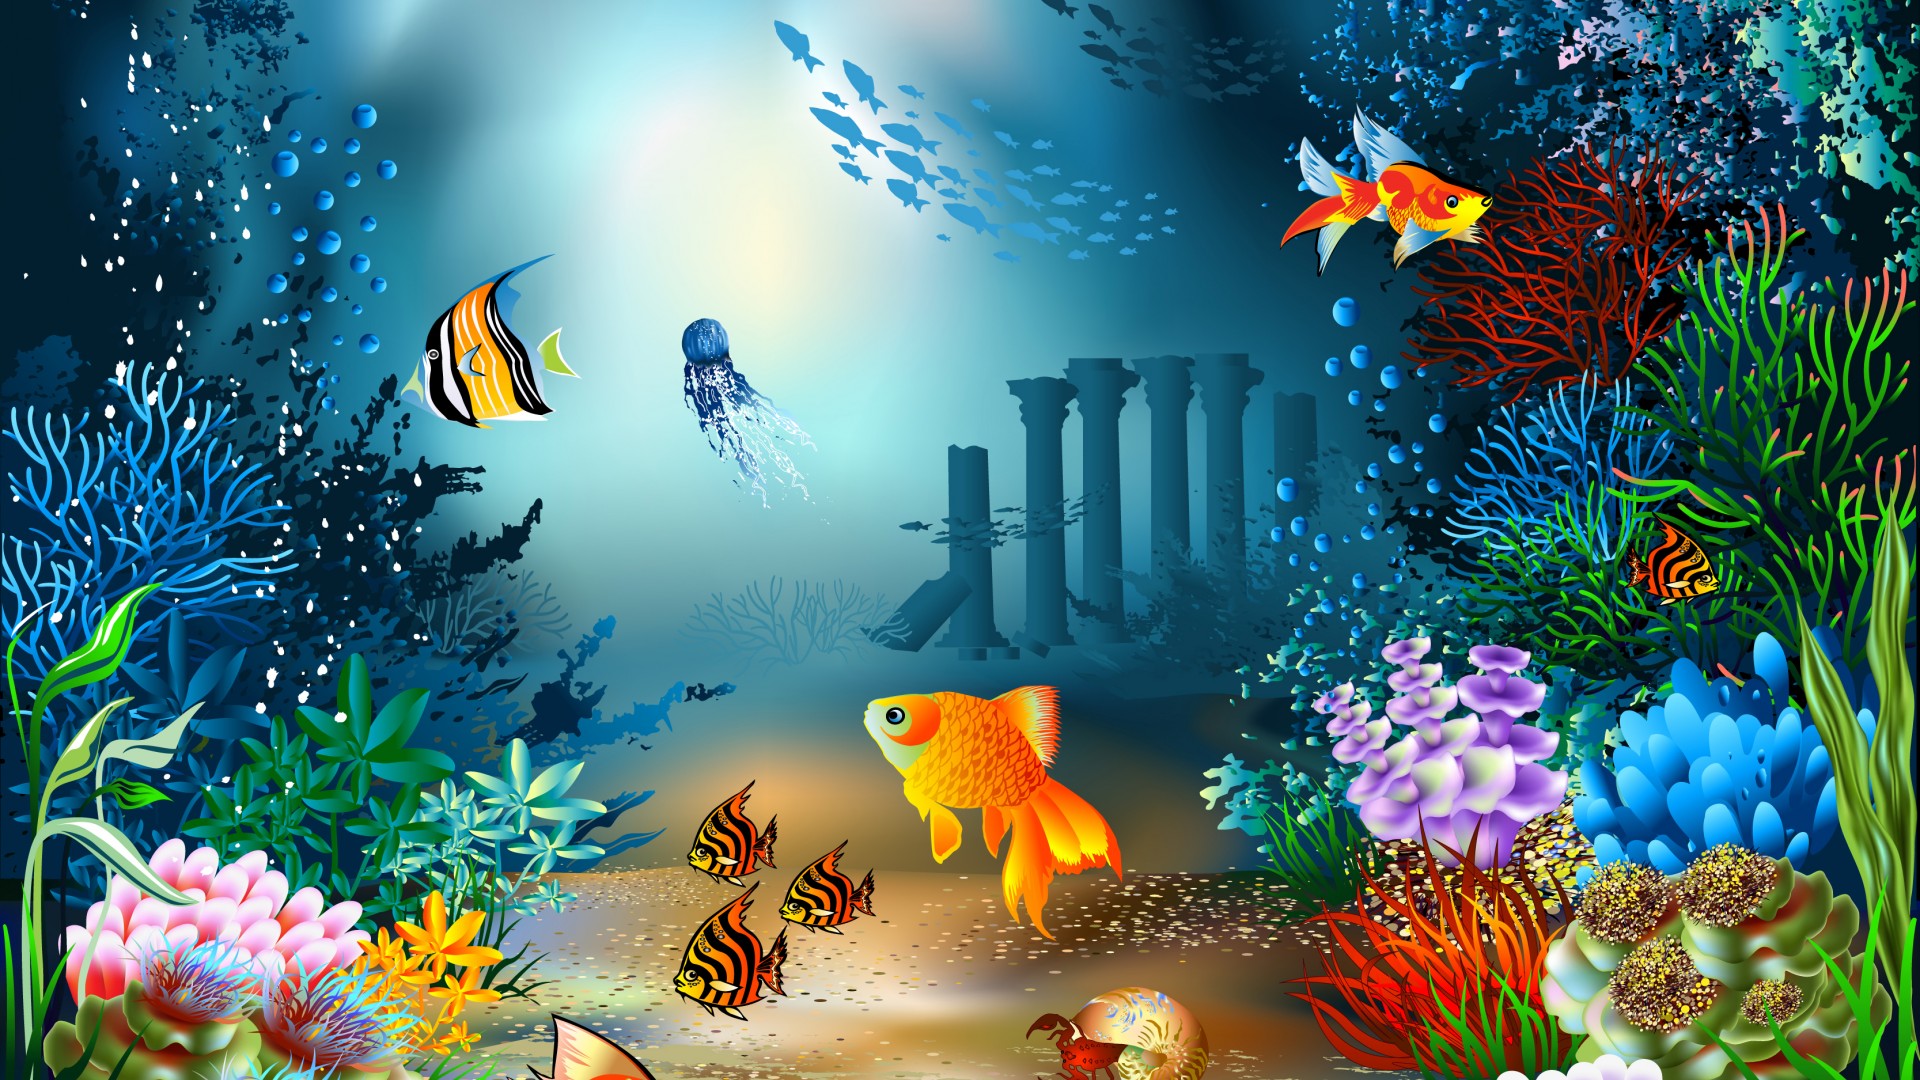 海底世界 海底珊瑚海 鱼 精美绘画电脑壁纸 唯美壁纸 壁纸下载 彼岸桌面